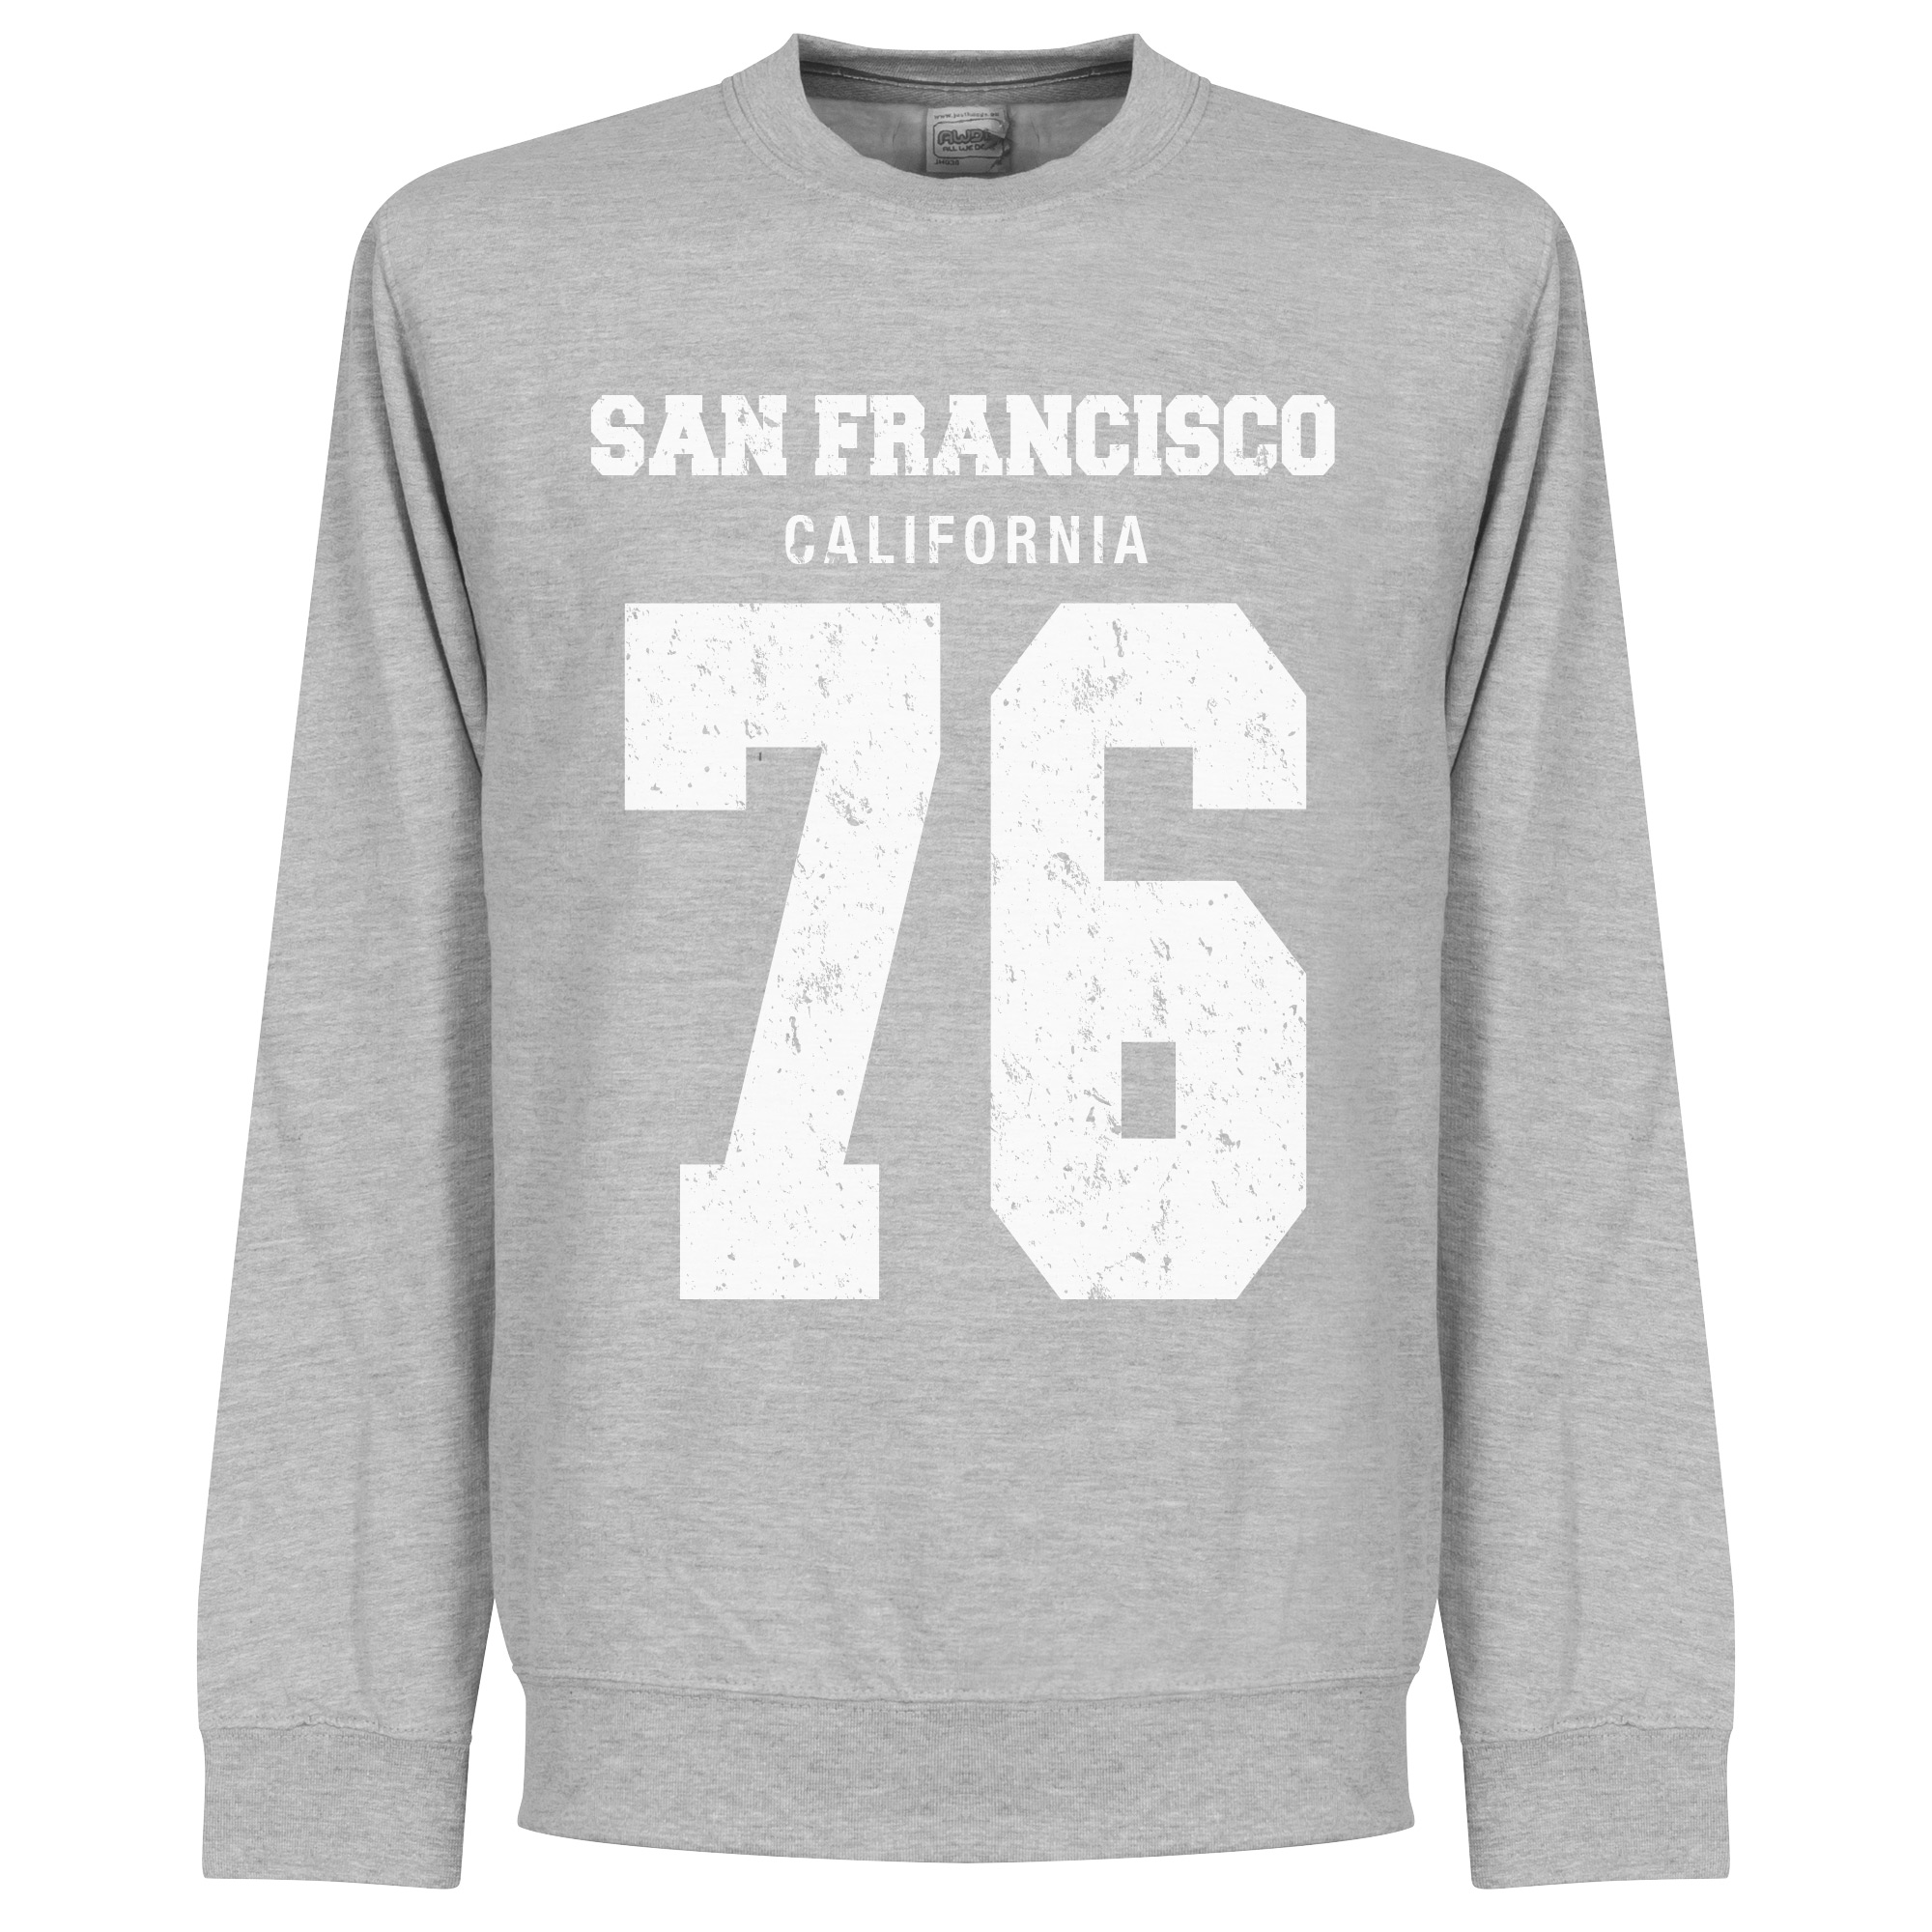 San Francisco '76 Crew Neck Sweater Top Merken Winkel